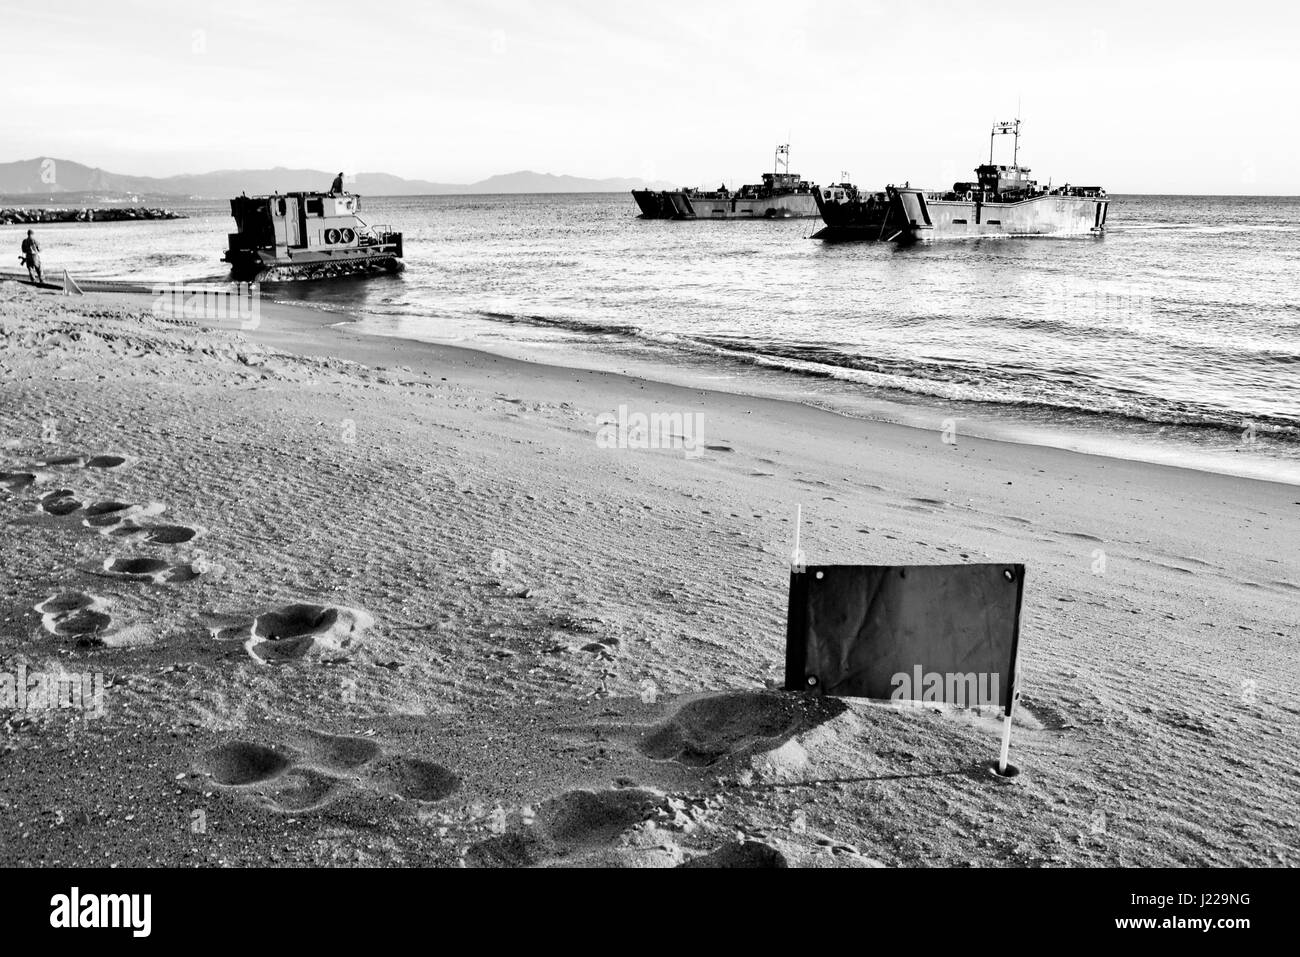 Royal Marines débarquements amphibies à l'Eastern Beach à Gibraltar. Photographe Stephen Ignacio à l'Eastern Beach, Gibraltar. La photographie noir et blanc Banque D'Images